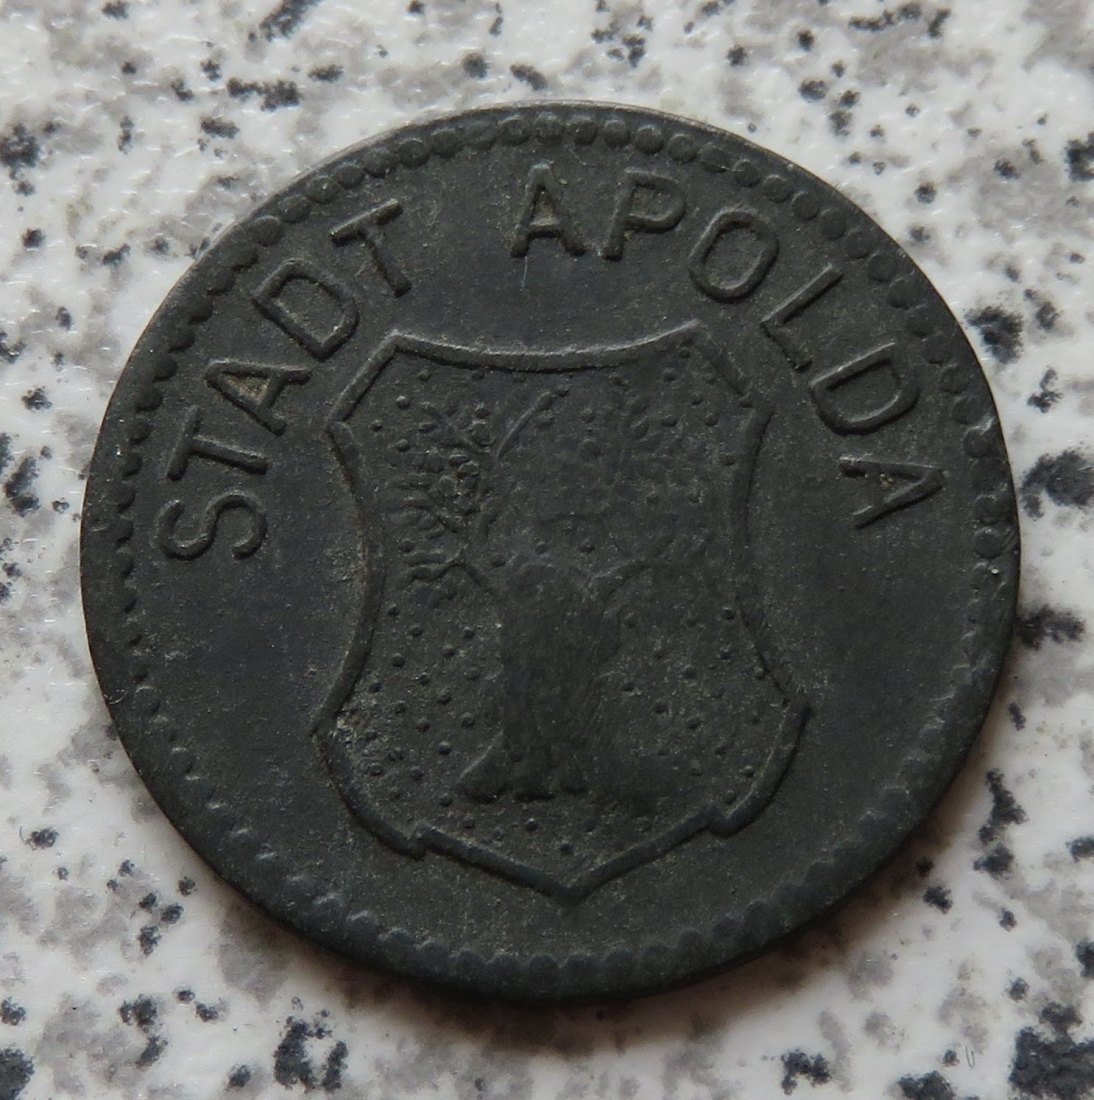  Apolda 10 Pfennig 1918   